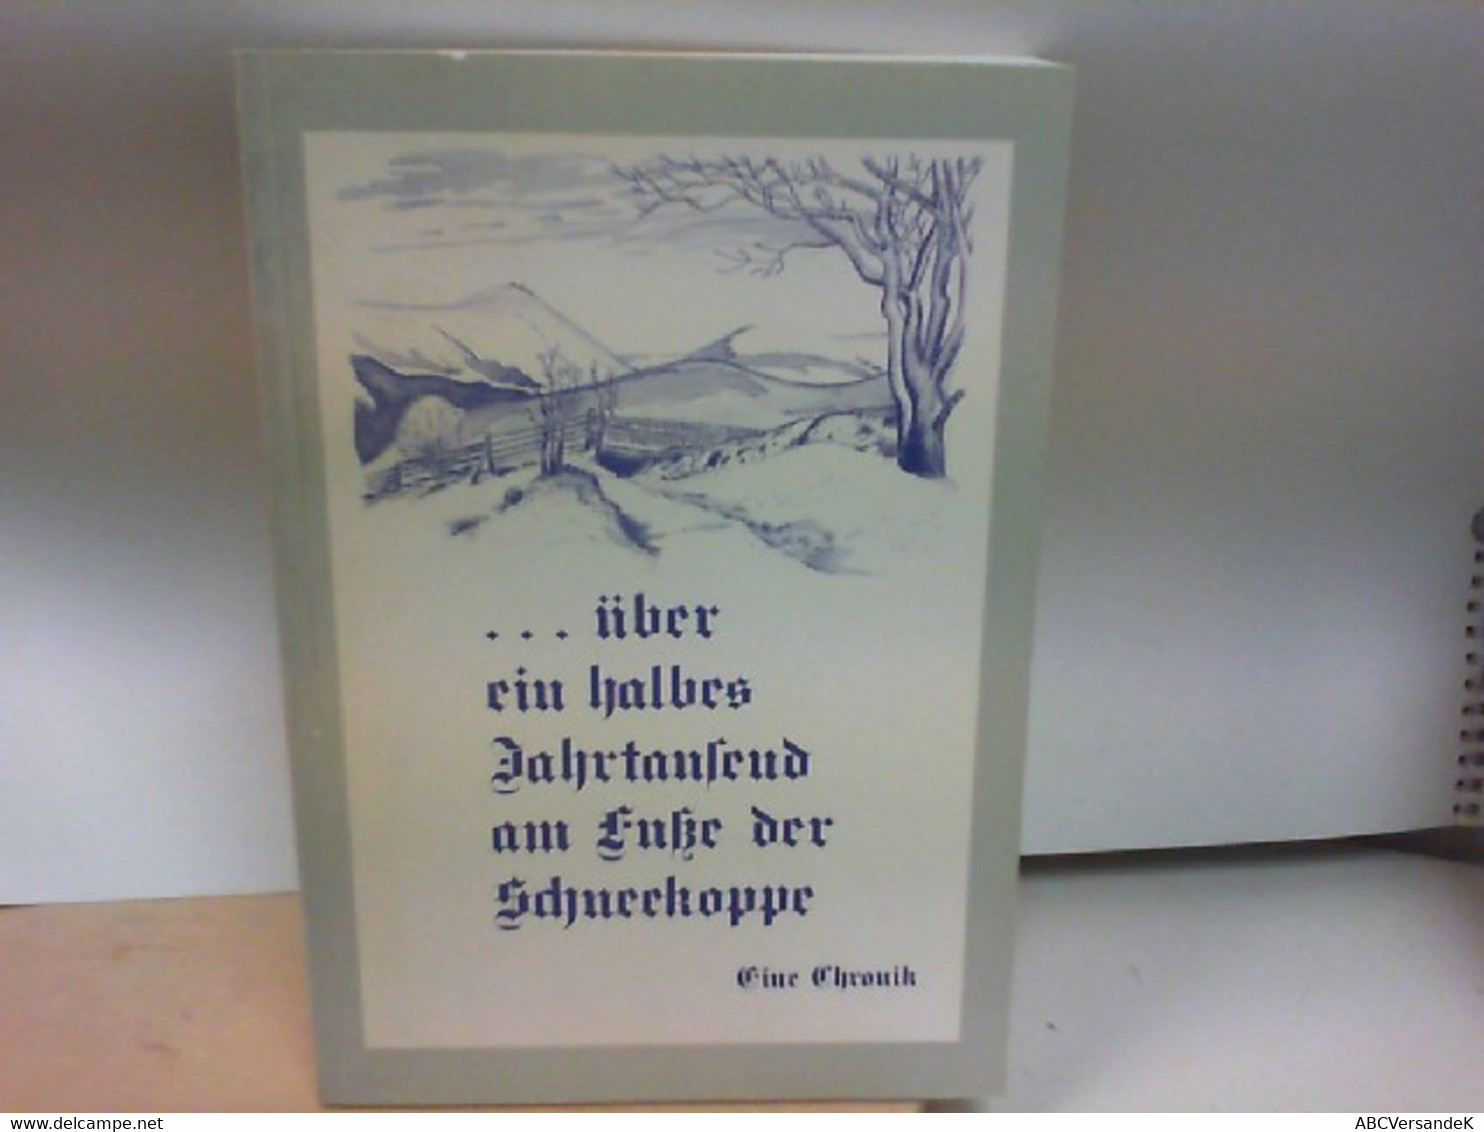 ...Über Ein Halbes Jahrtausend Am Fuße Der Schneekoppe. EINE CHRONIK - Original Editions